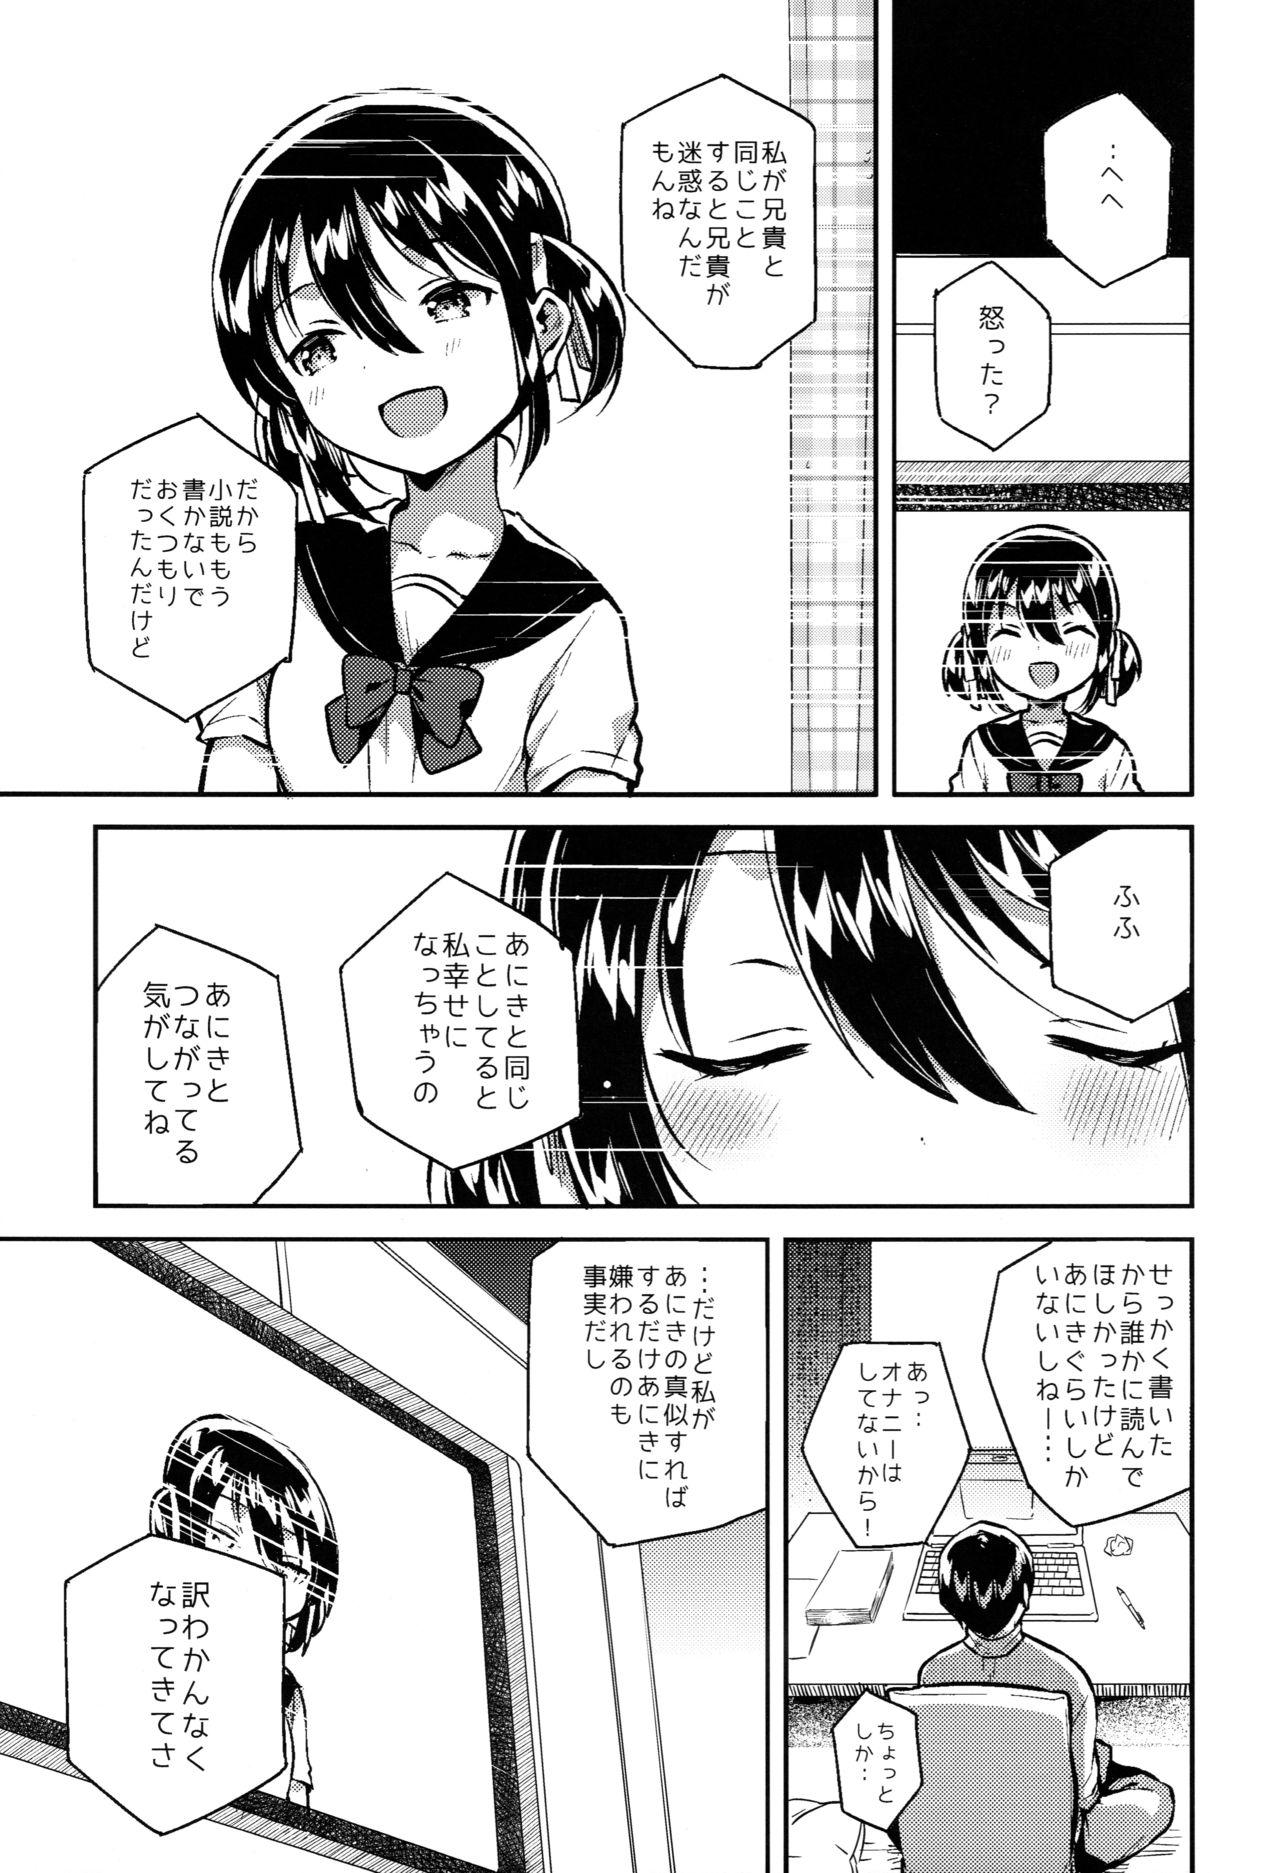 Cumming Imouto wa Kakezan ga Dekiru - Original Pigtails - Page 8